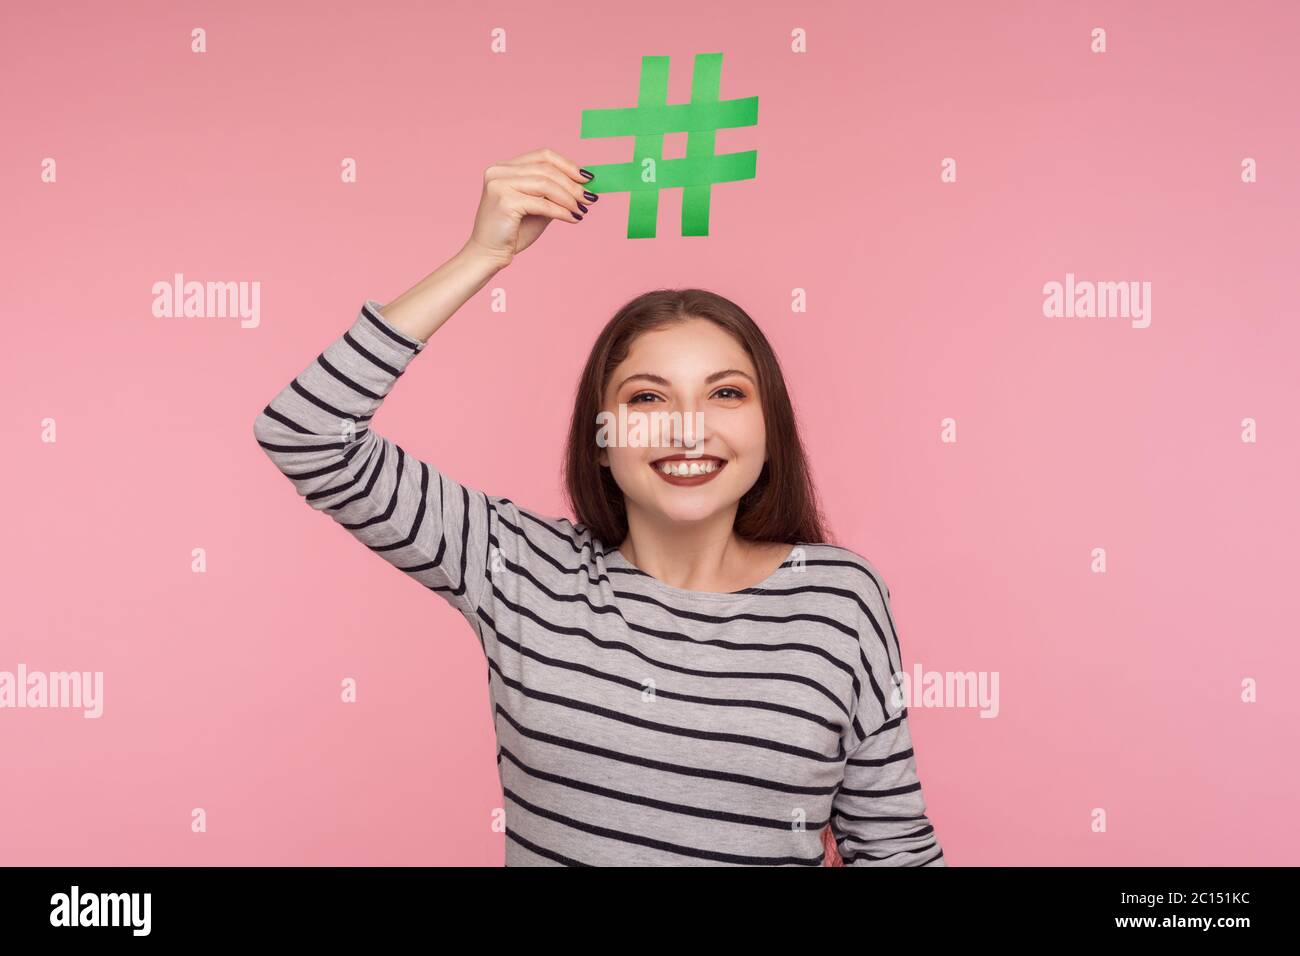 Überprüfen Sie virale Internet-Thema! Porträt von glücklichen jungen Frau in Sweatshirt Hashtag Symbol über dem Kopf und Blick auf die Kamera mit toothy Lächeln, folgenden tr Stockfoto